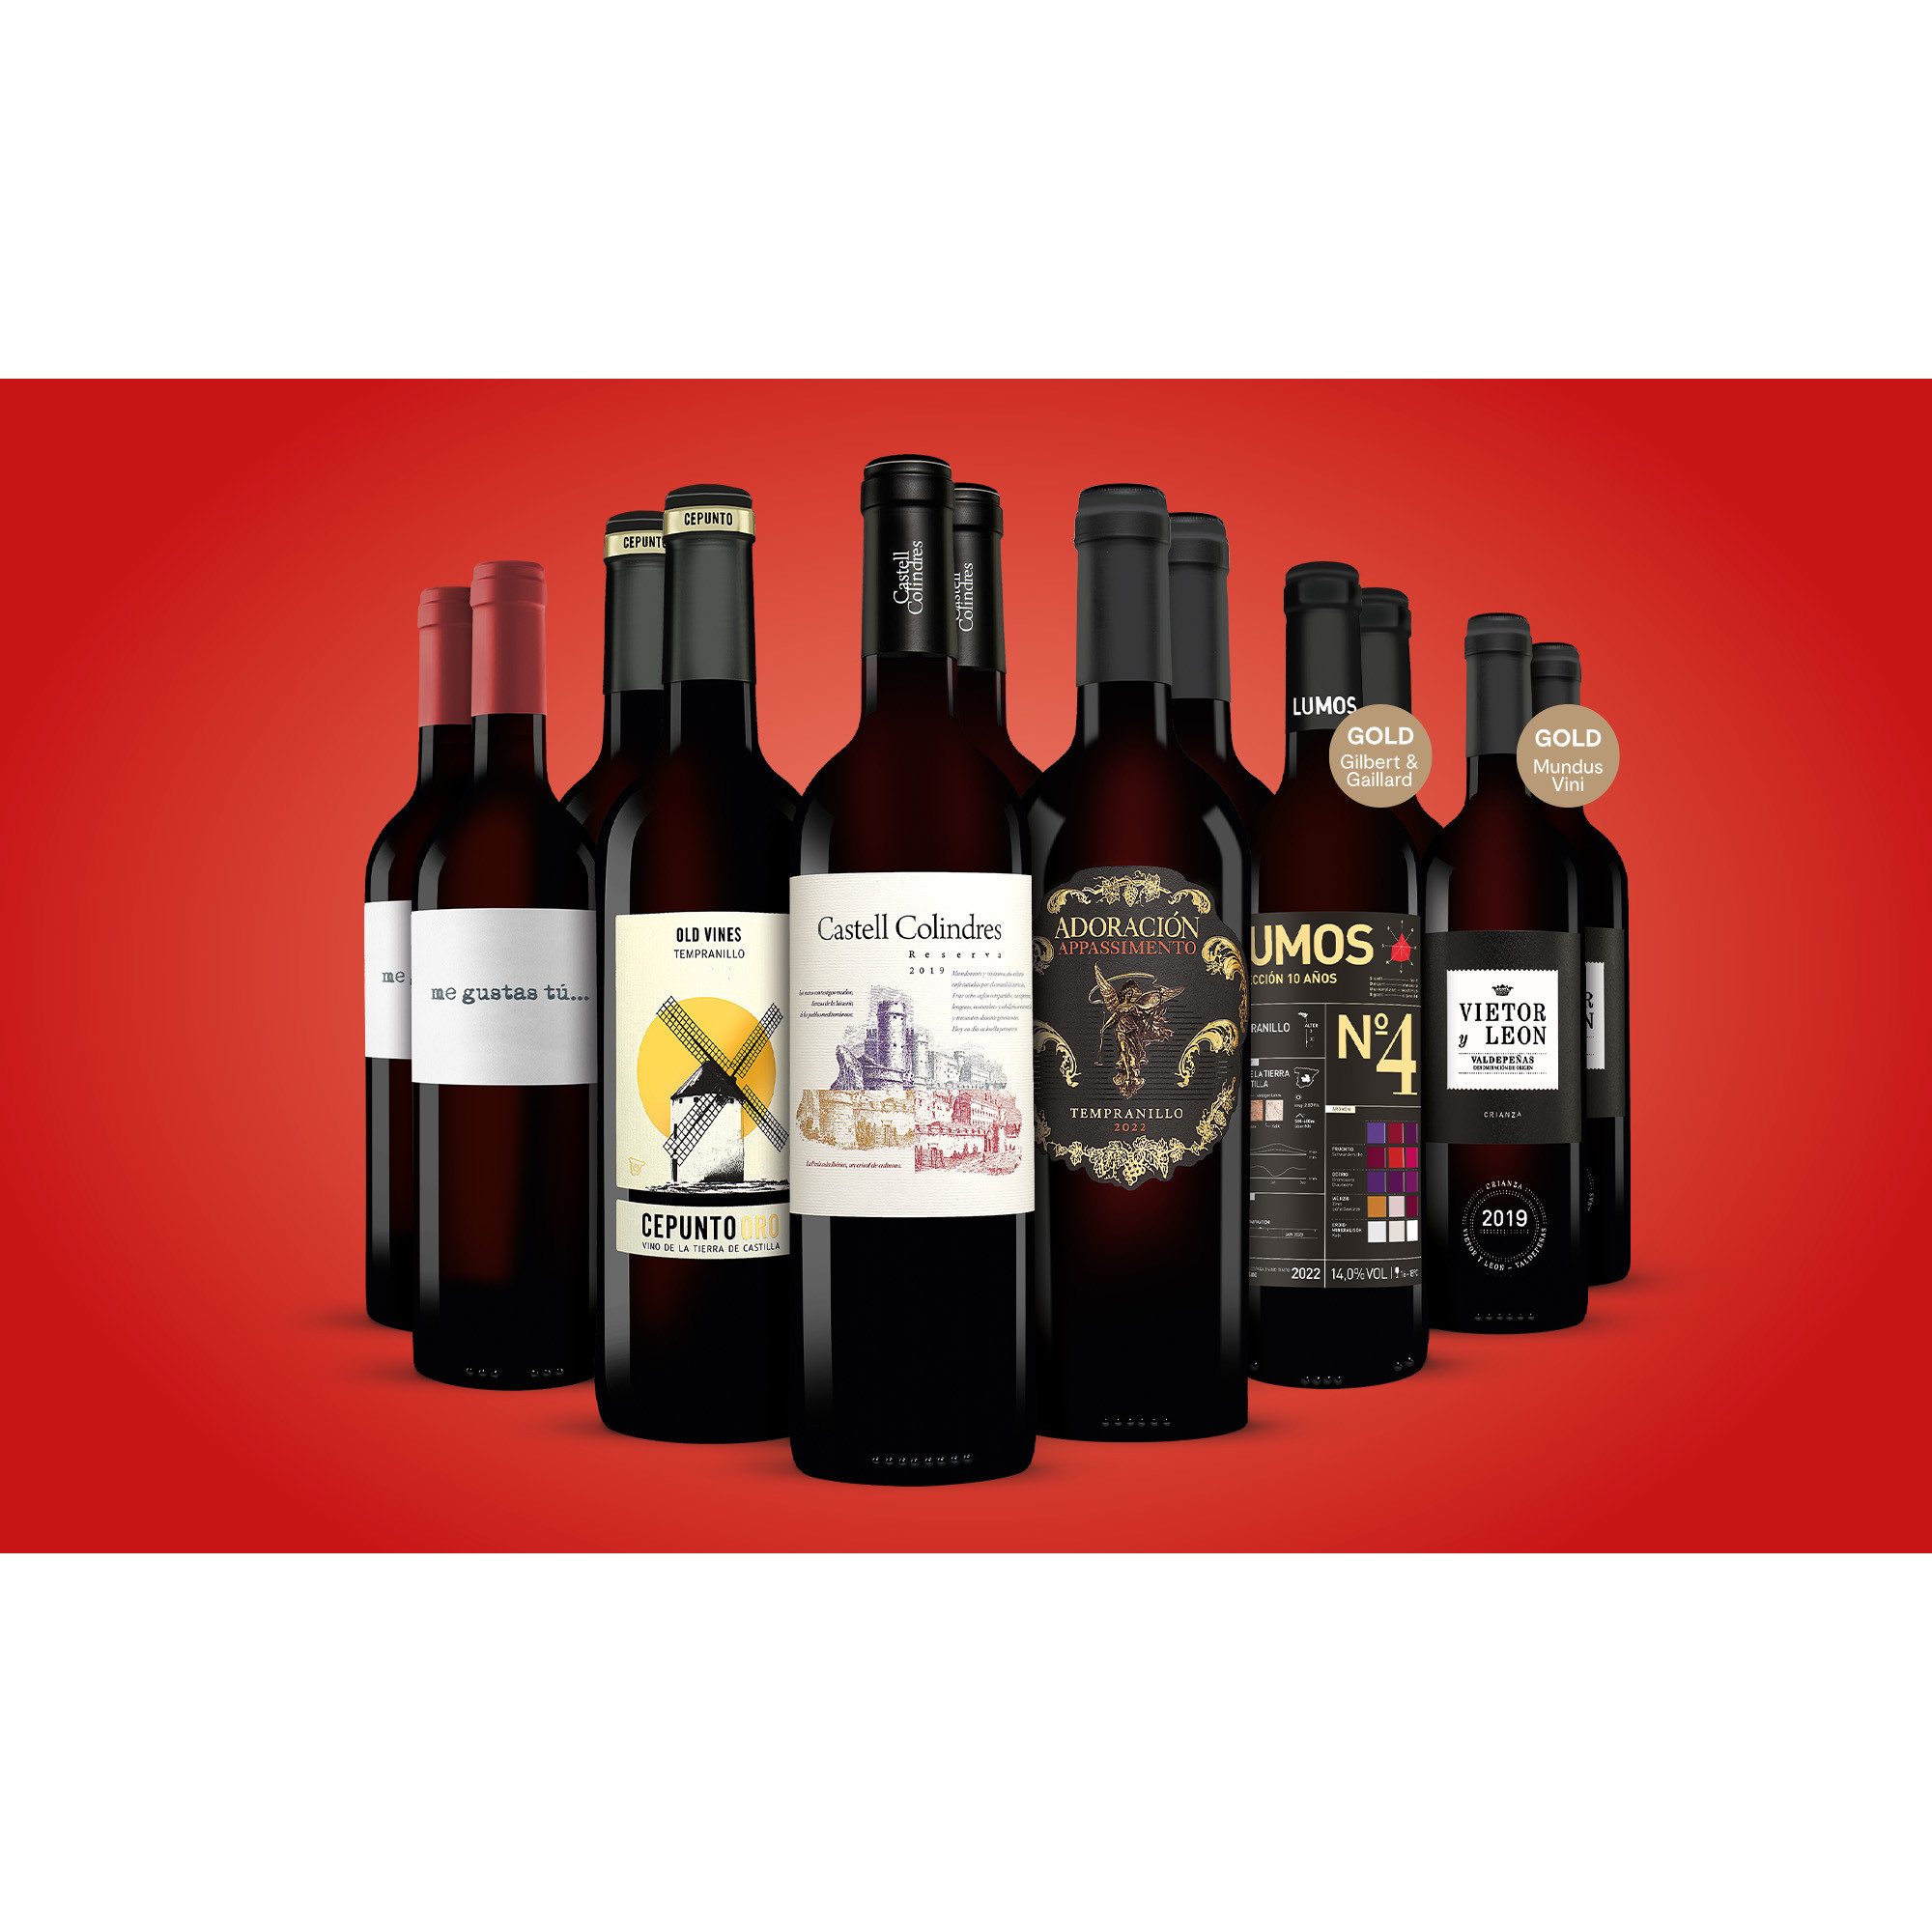 Topseller-Paket  9L Trocken Weinpaket aus Spanien 6706 vinos DE